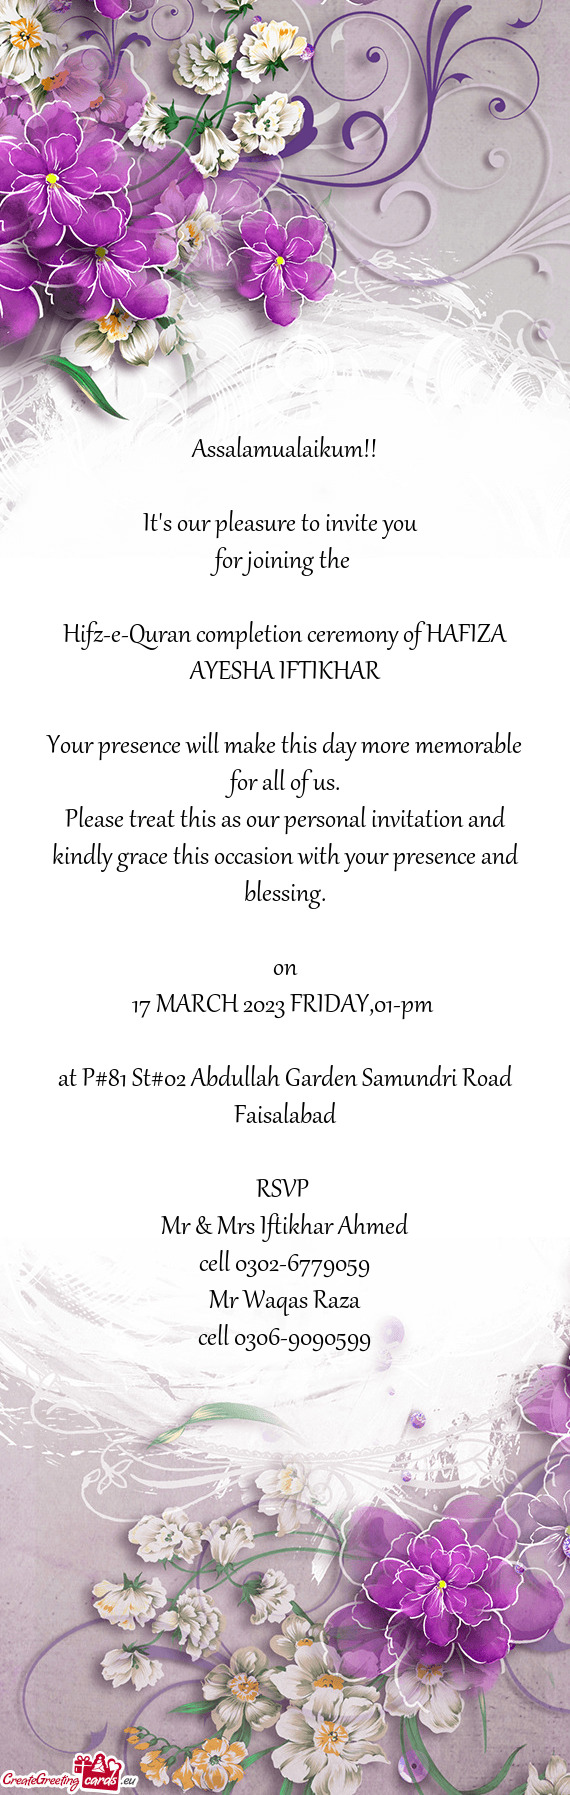 Hifz-e-Quran completion ceremony of HAFIZA AYESHA IFTIKHAR